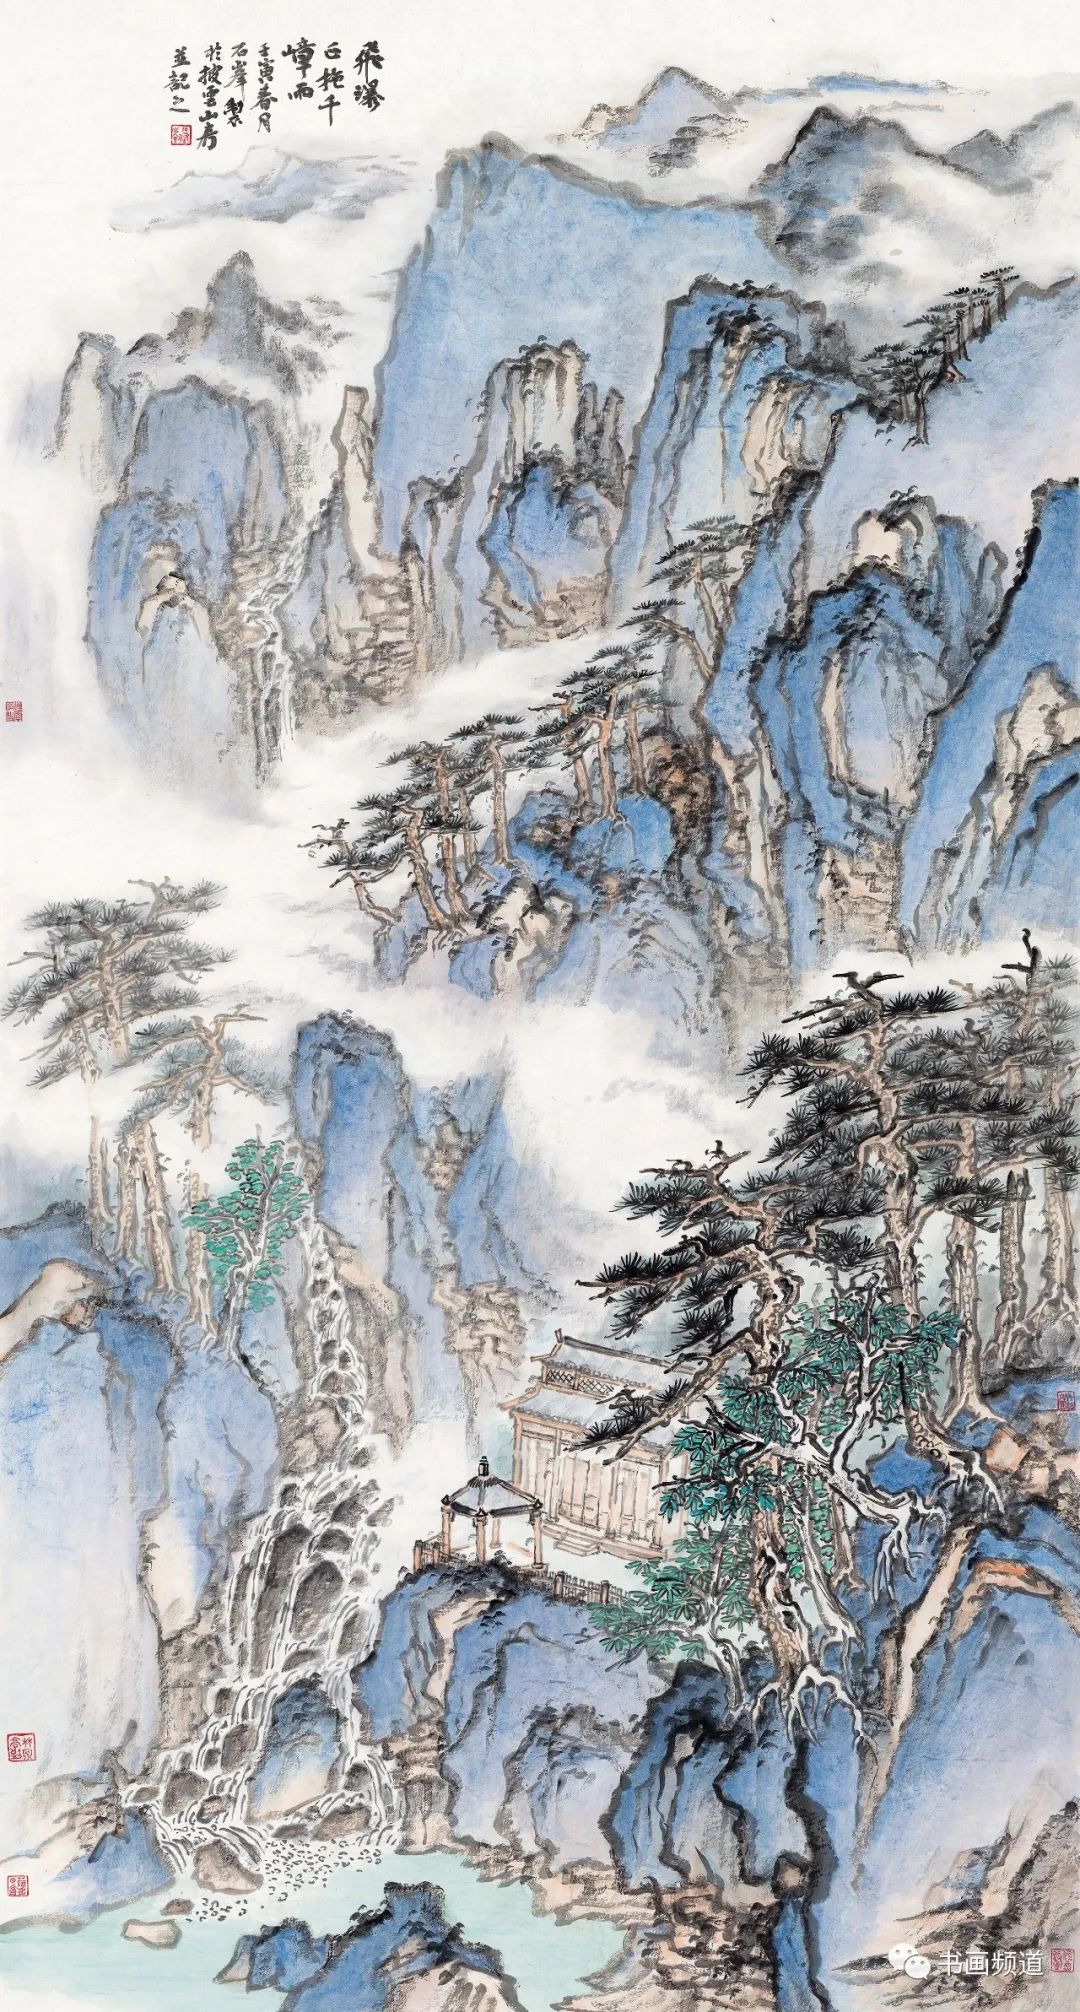 在苍茫中见清润之致，著名画家石峰现场创作《南山瀑水长》